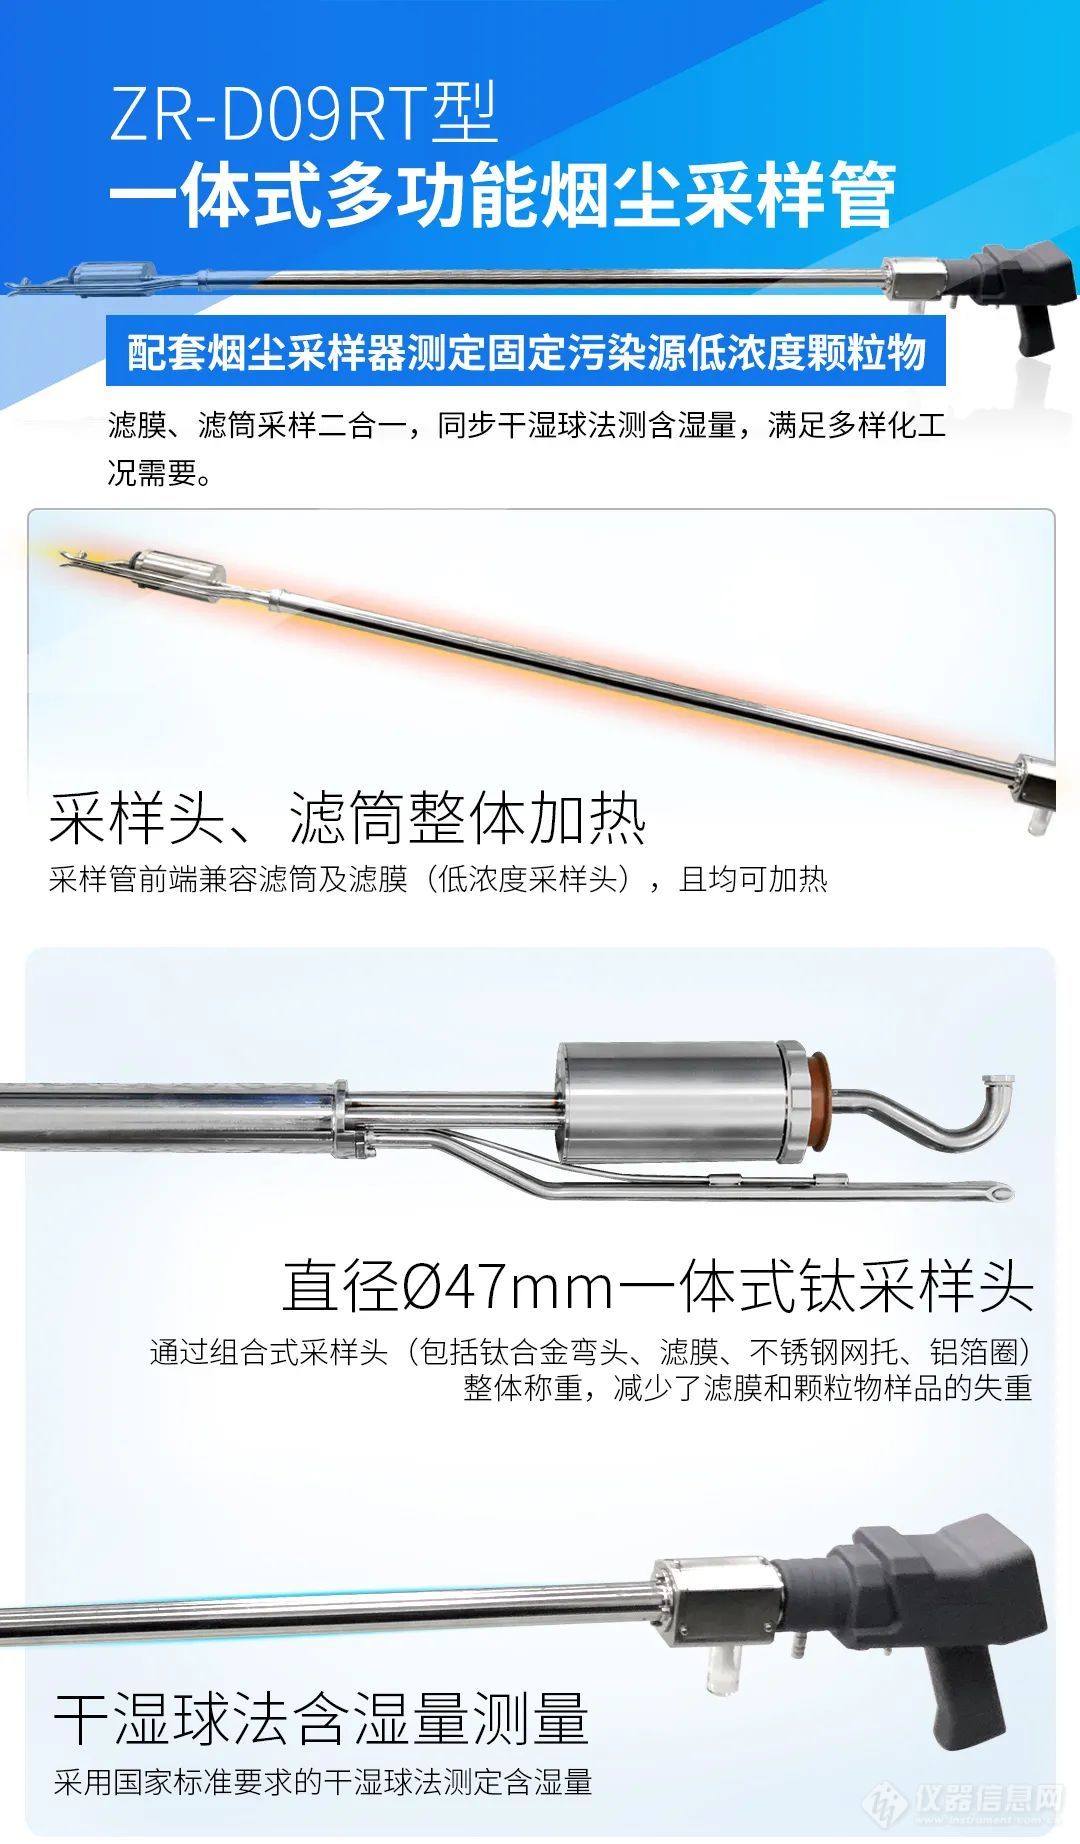 新品发布丨青岛众瑞ZR-D09RT型一体式多功能烟尘采样管